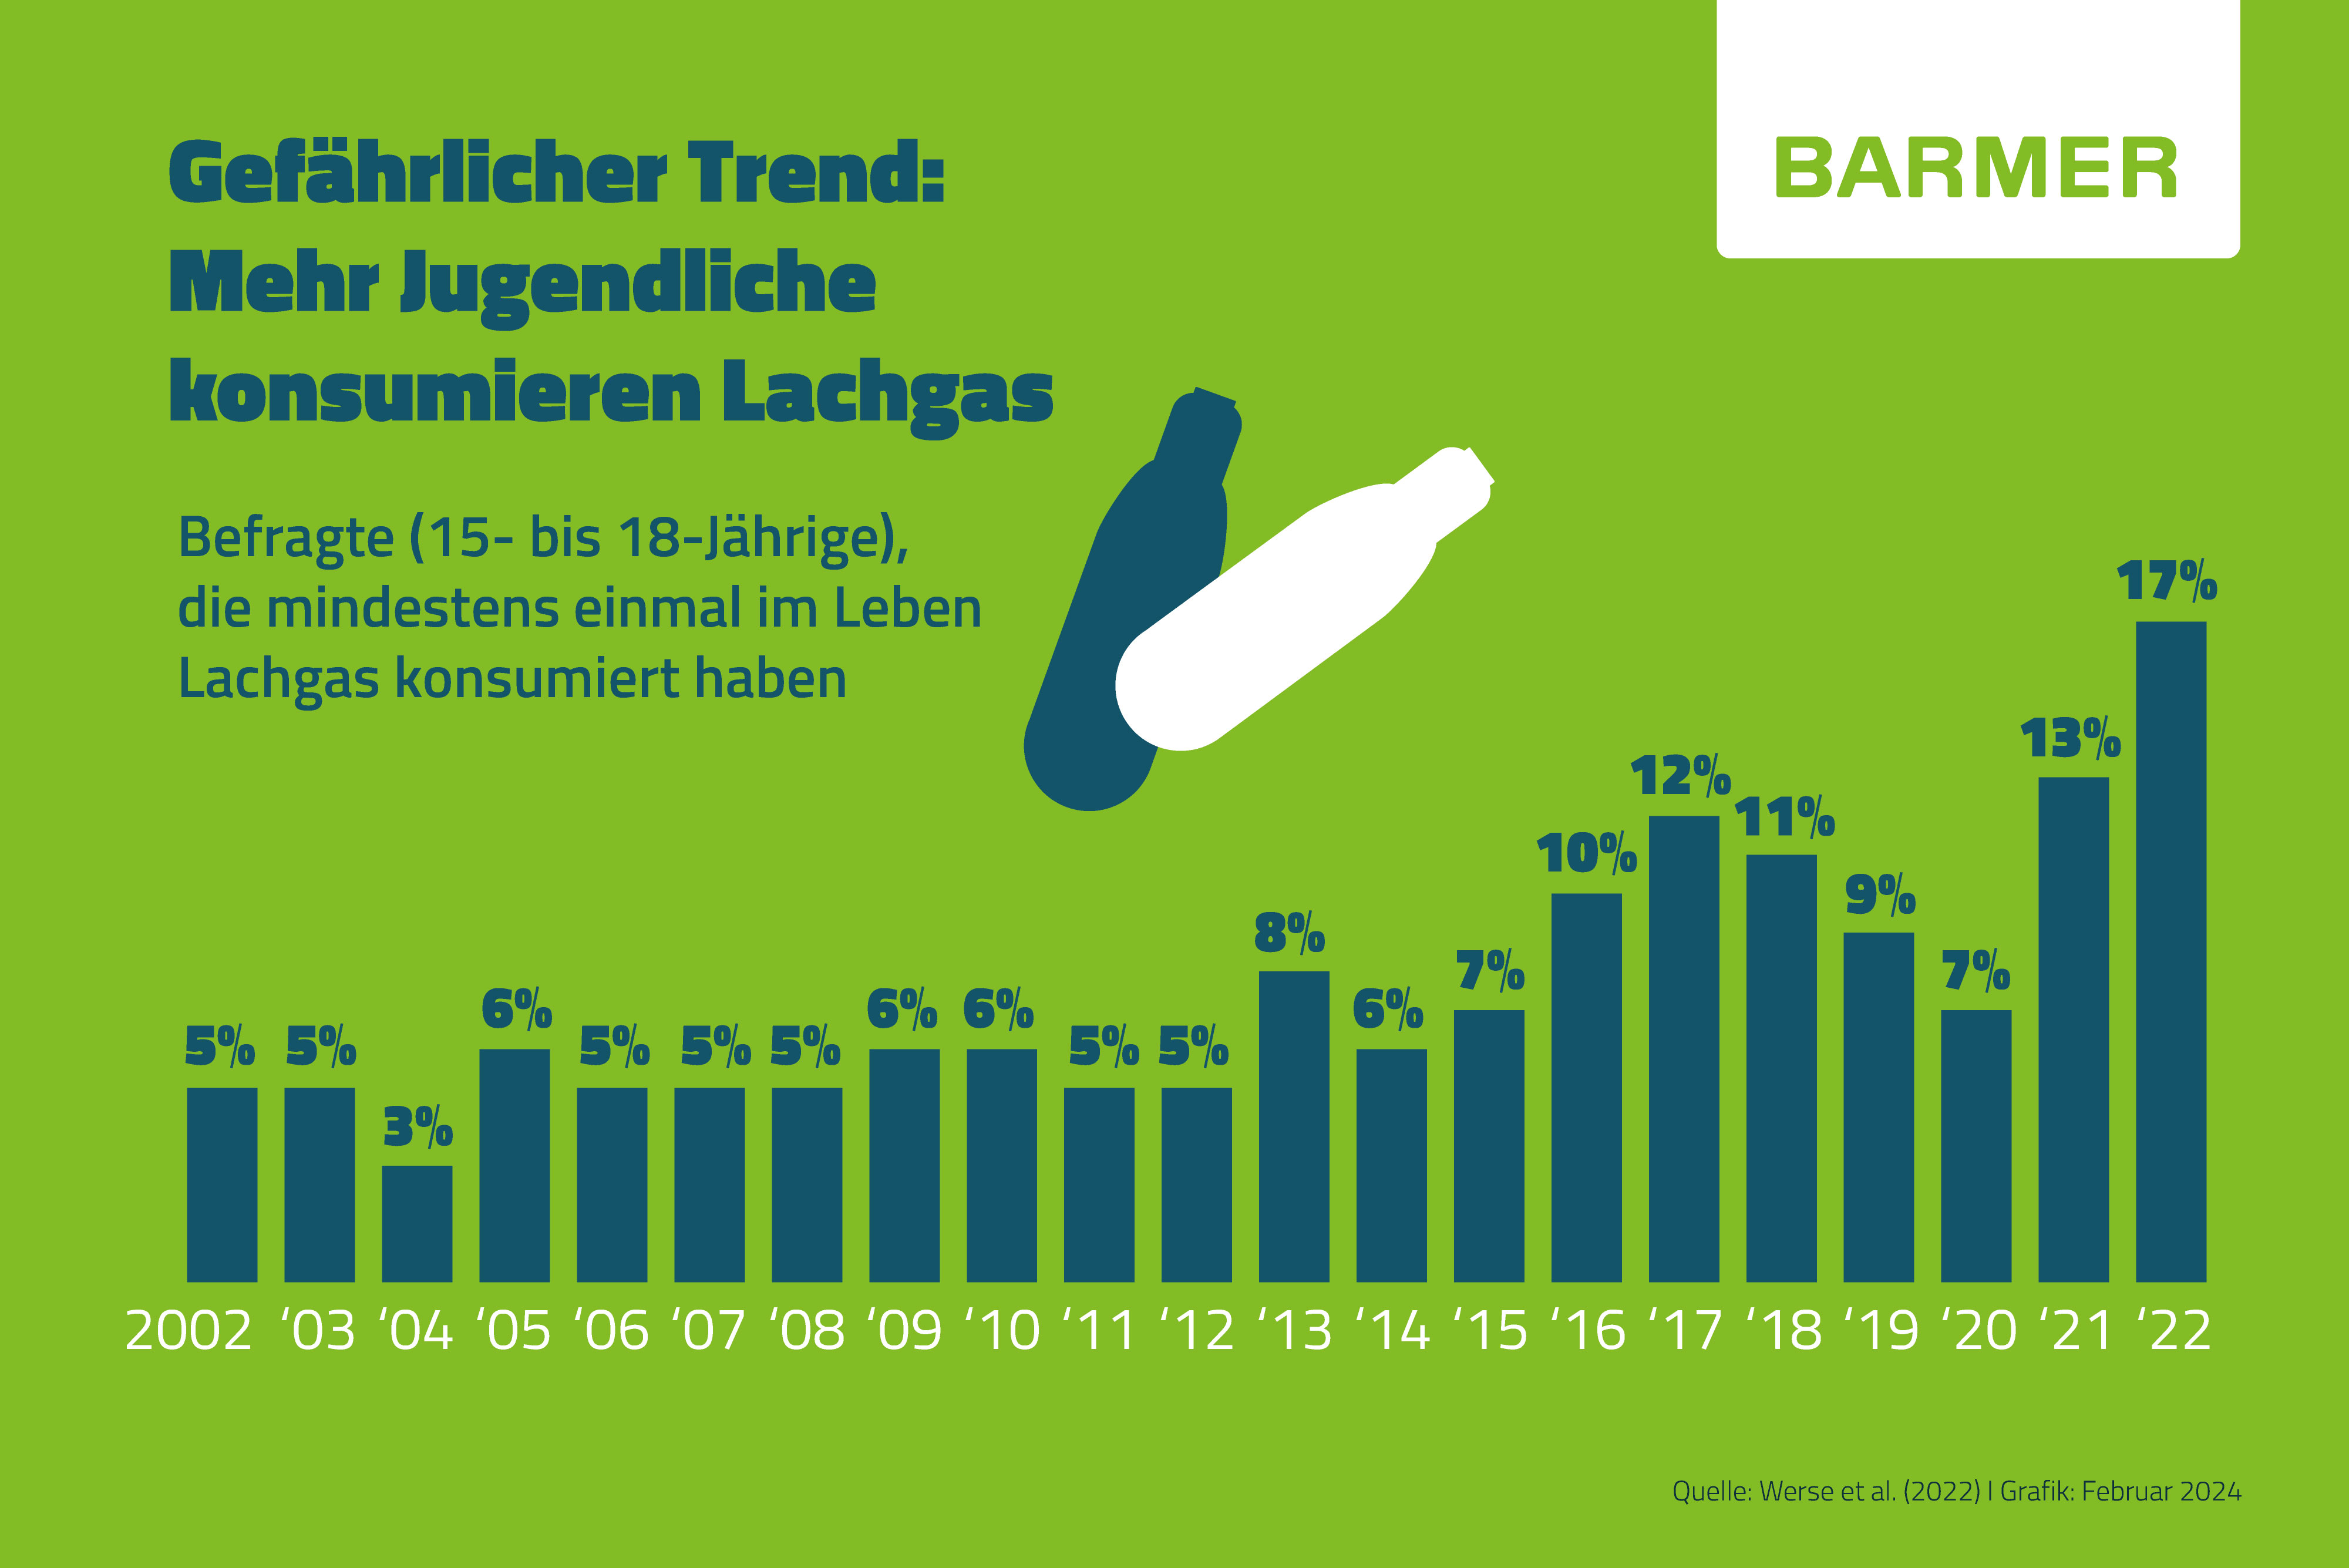 Der Konsum von Lachgas unter Jugendlichen ist in den letzten Jahren stark angestiegen.